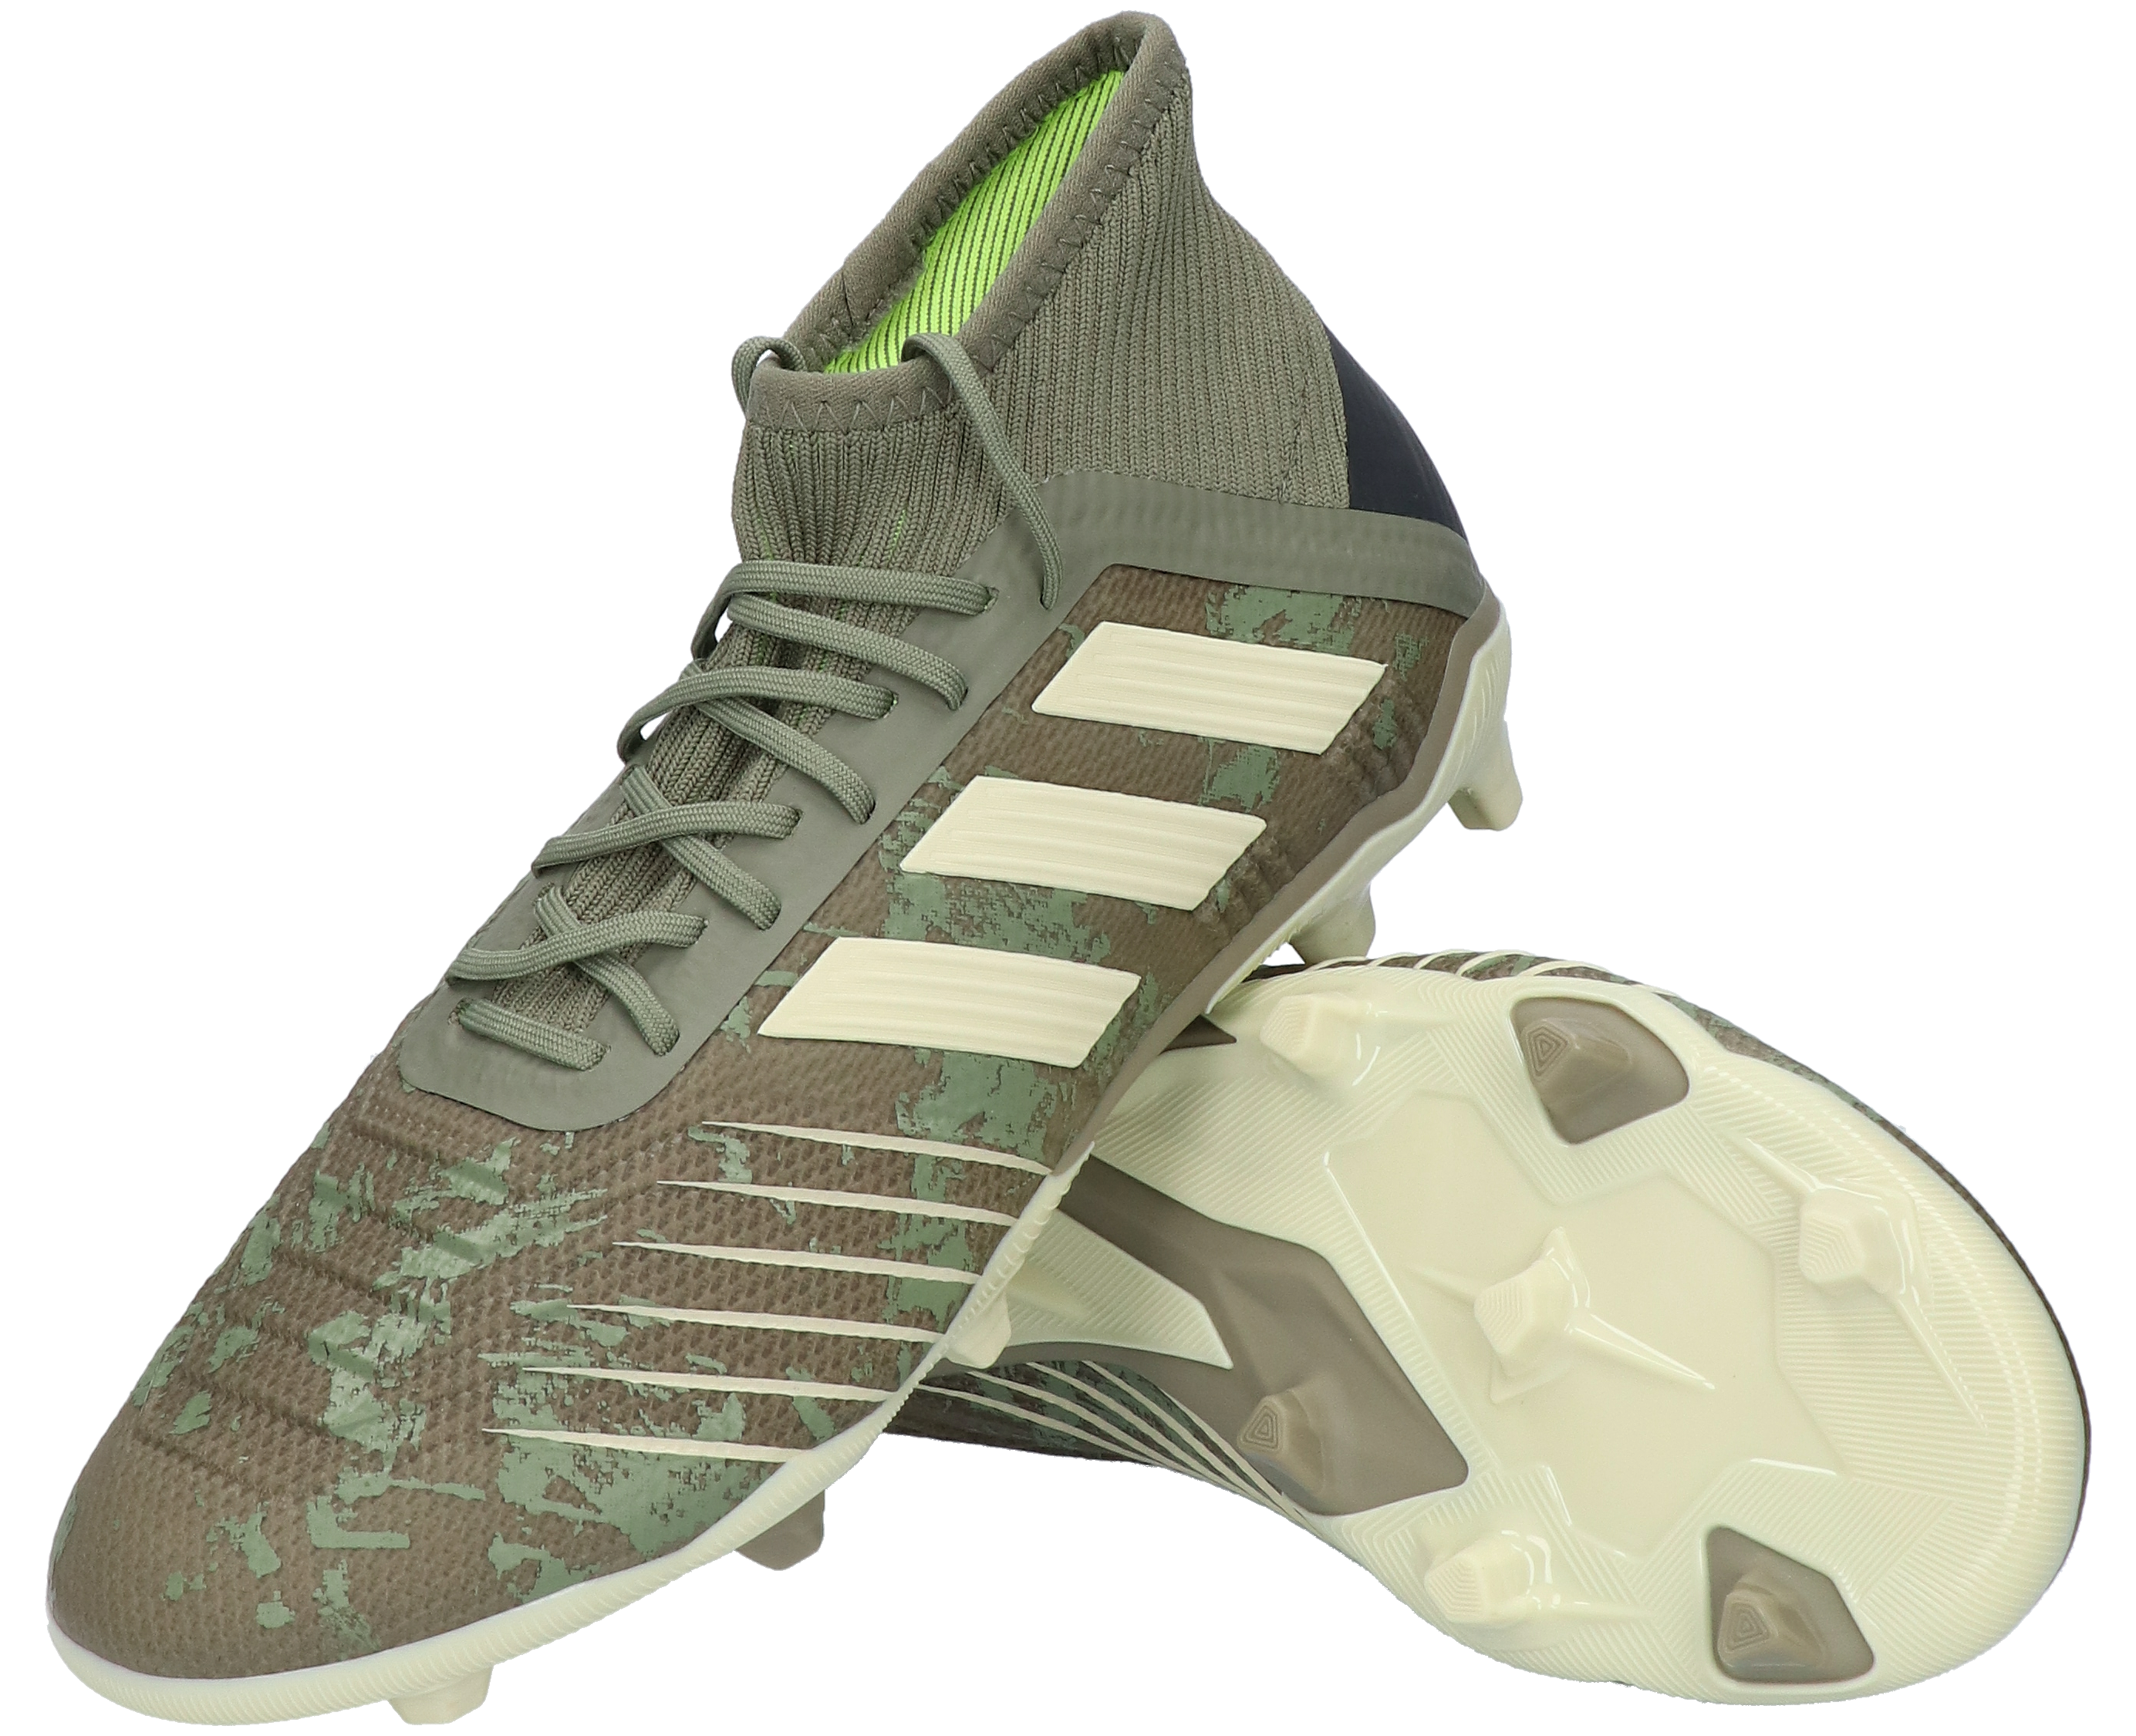 adidas Predator 19.1 FG Junior | R-GOL.com - Football boots u0026 equipment